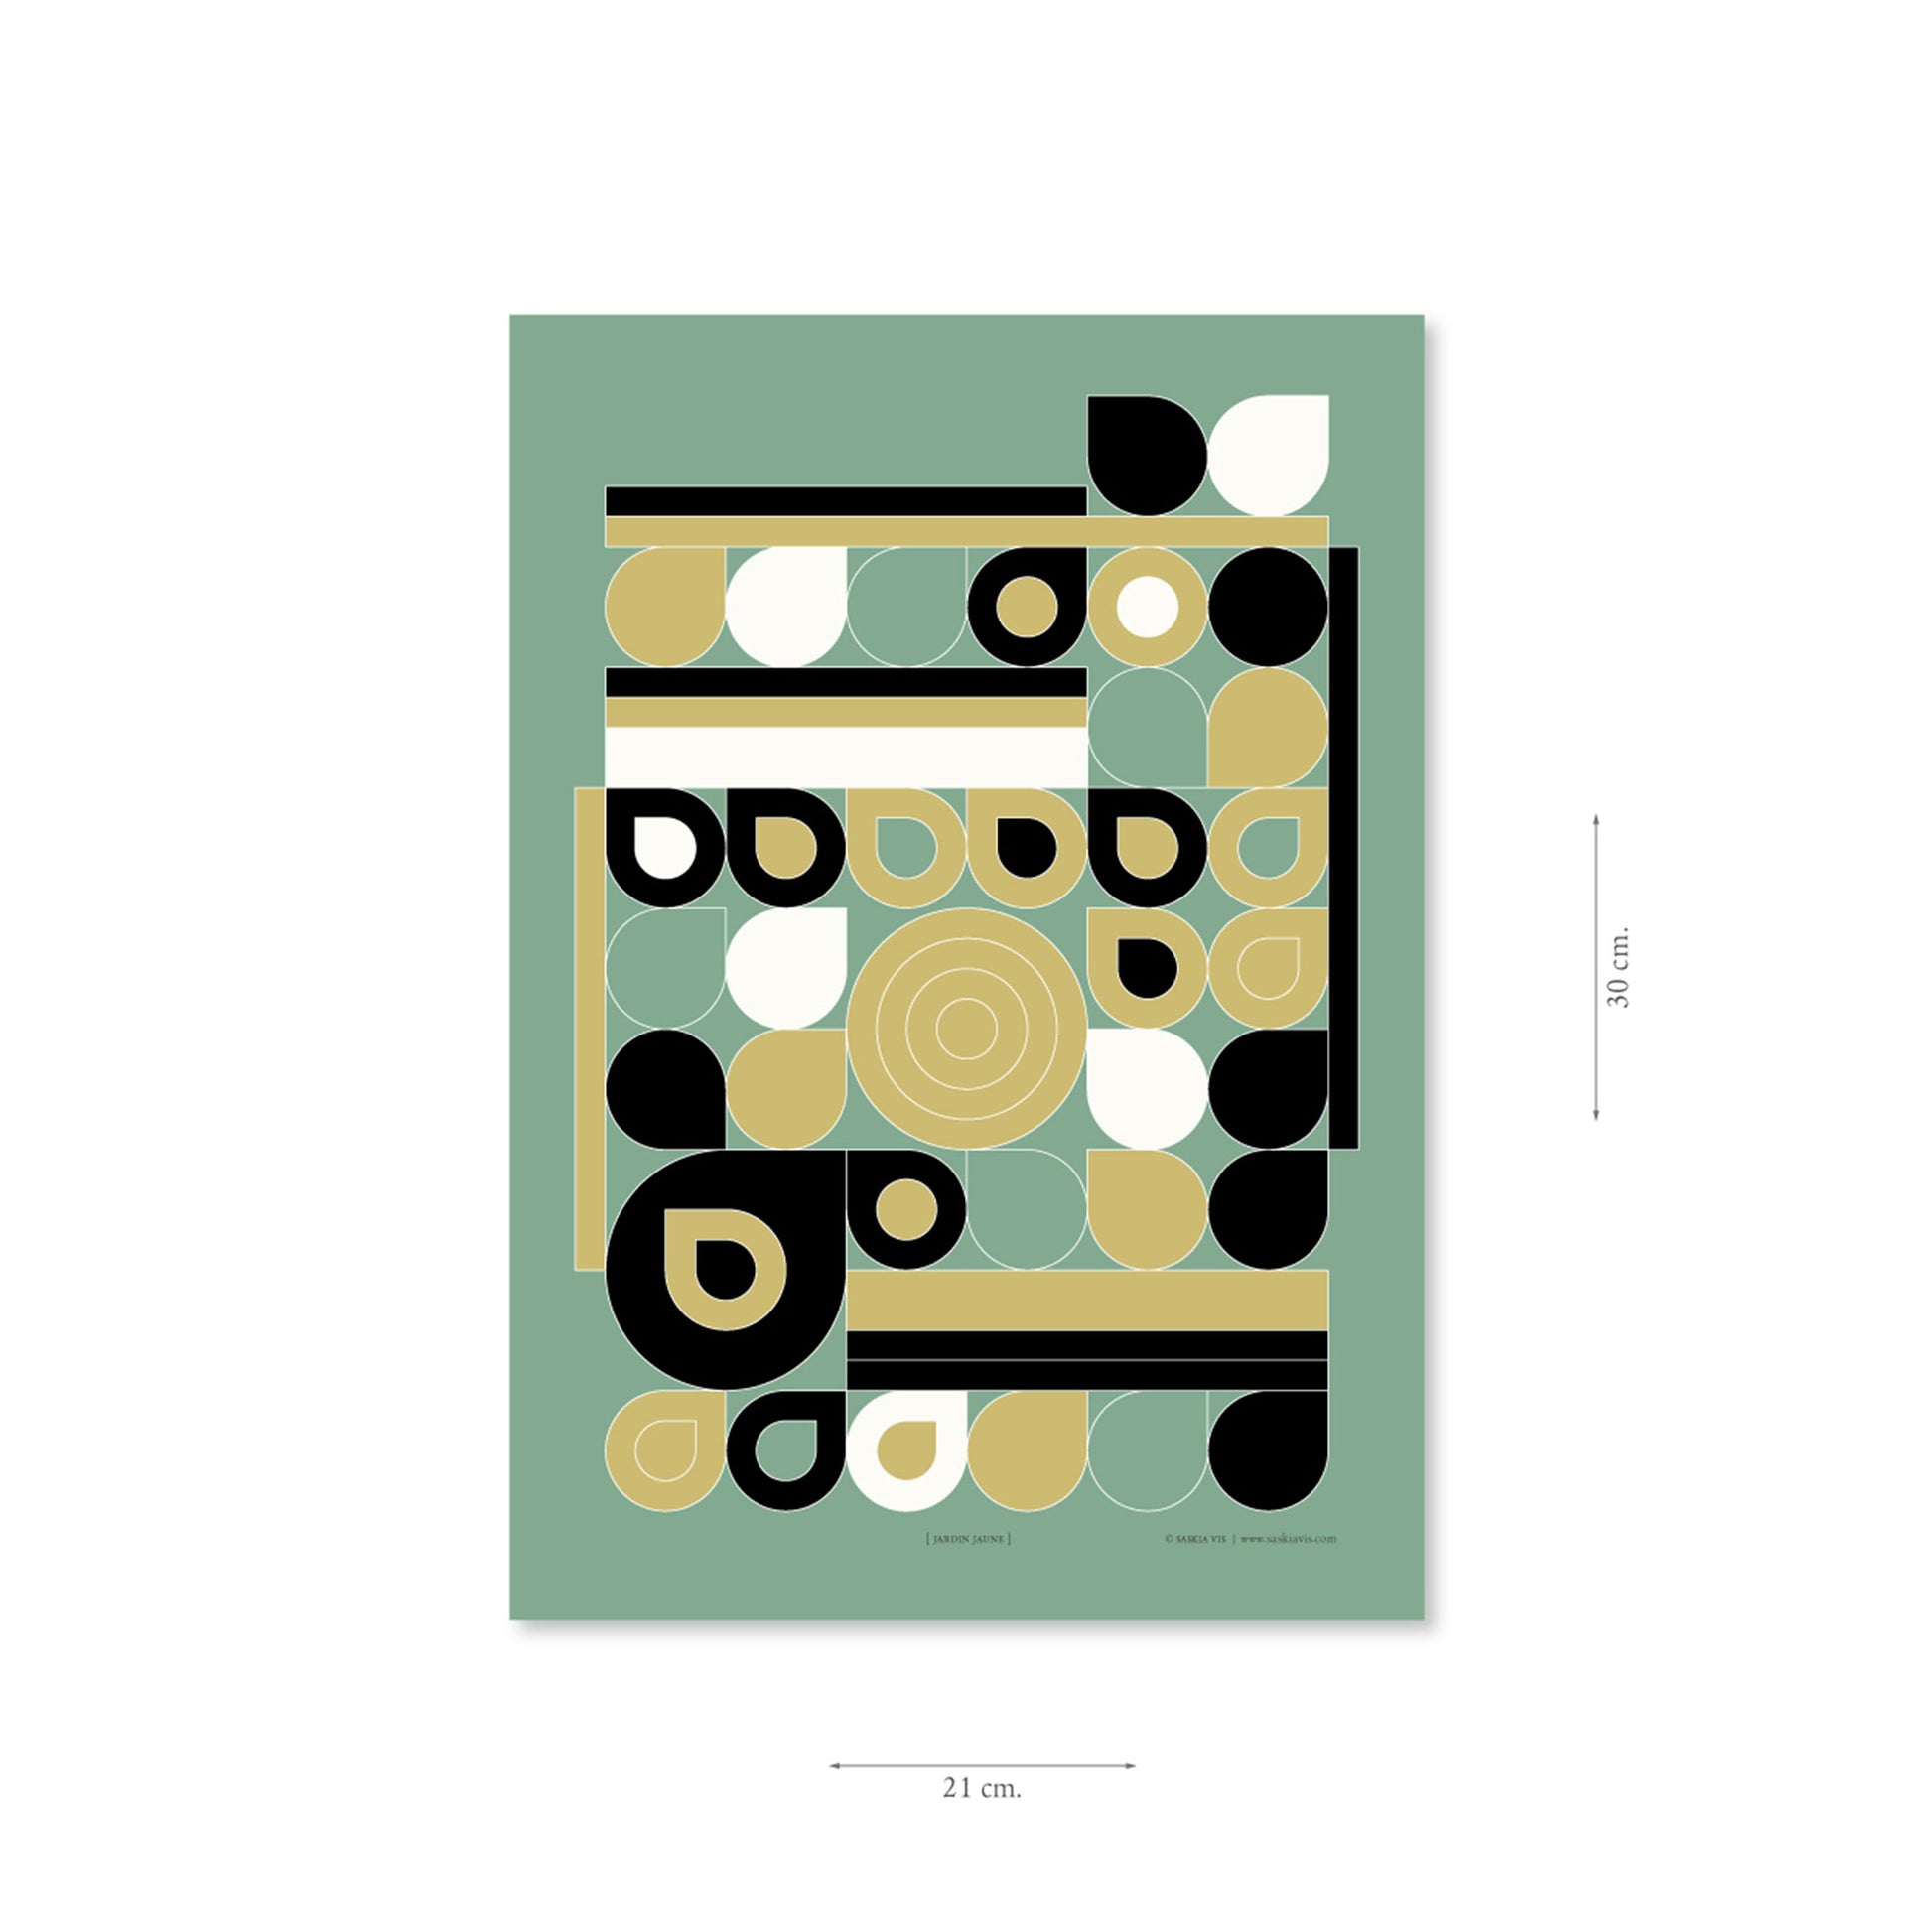 Productafbeelding, poster "jardin jaune", met aanduiding van het formaat erop weergegeven 21 x 30 cm